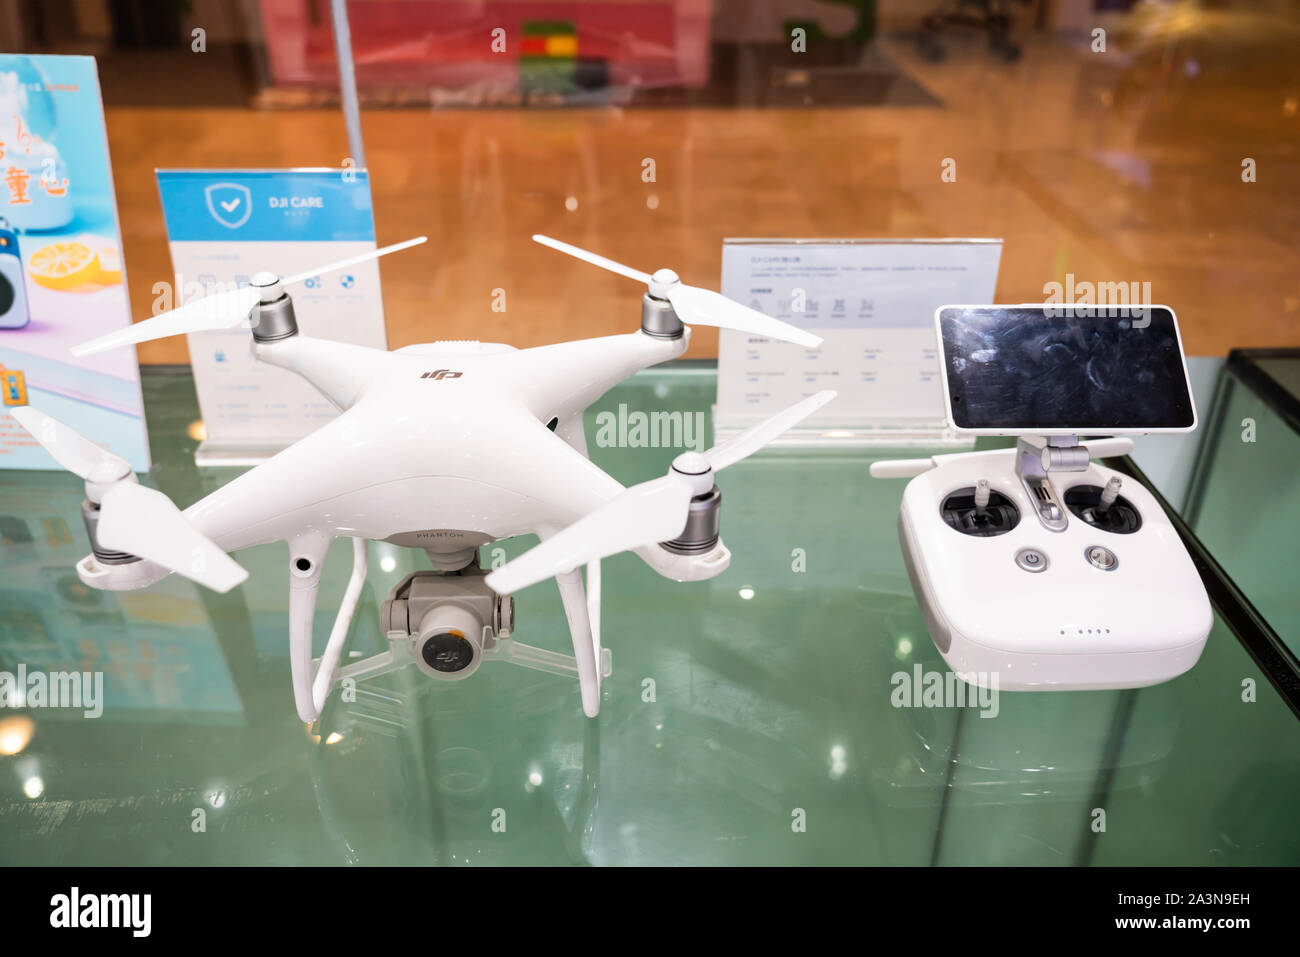 DJI Phantom 4 Pro drone affiché dans un magasin à Guangzhou. DJI Photo  Stock - Alamy